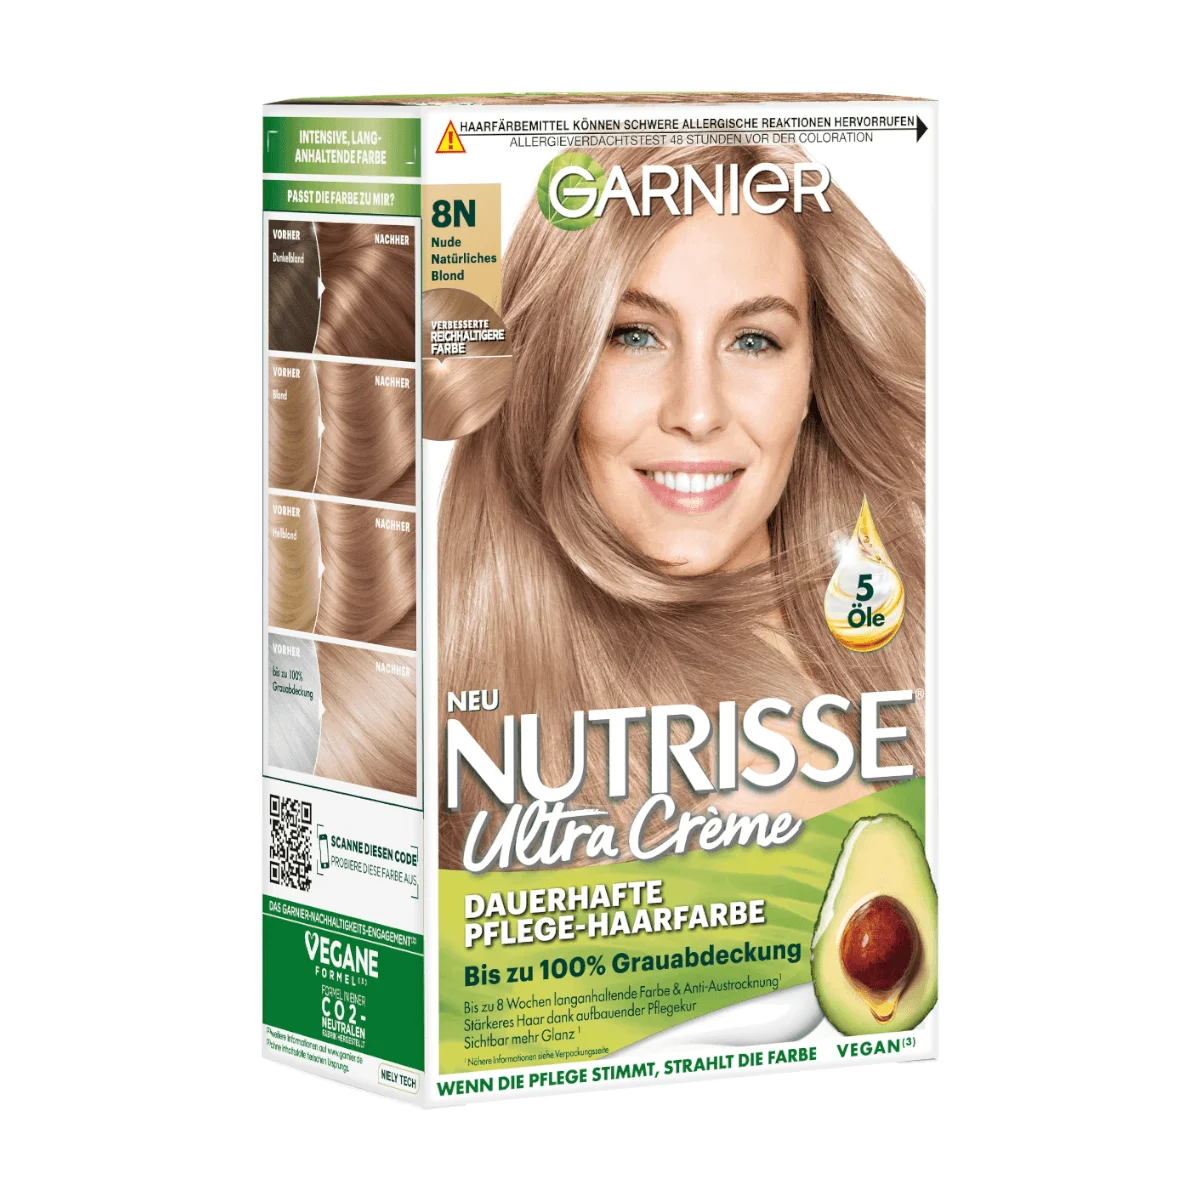 Garnier Nutrisse Ultra Creme Haarfarbe 8N Nude Natürliches Blond, 1 Stk